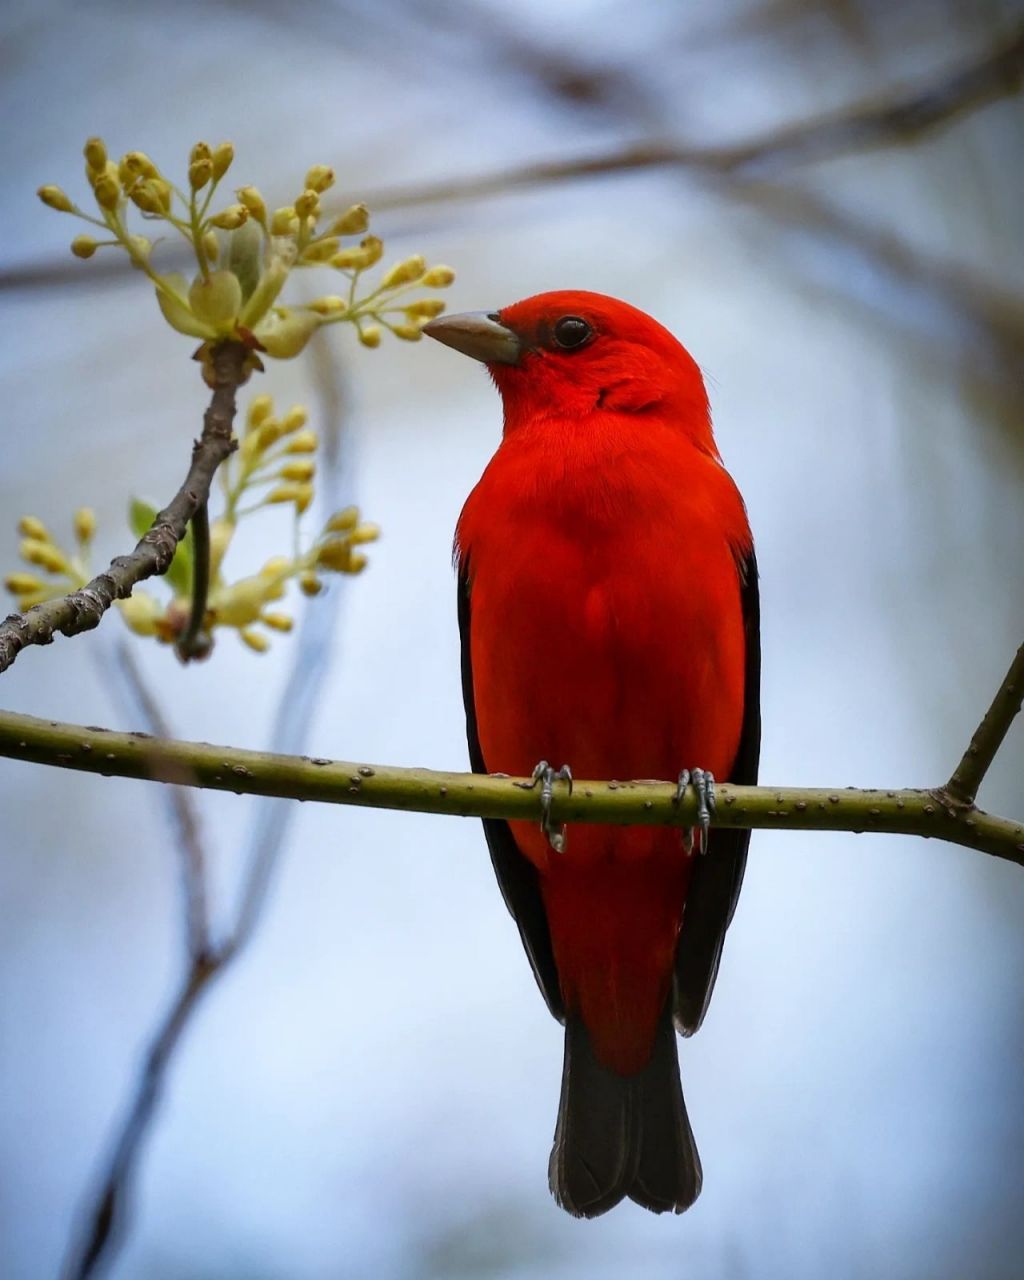 全身红色的鸟动物图片